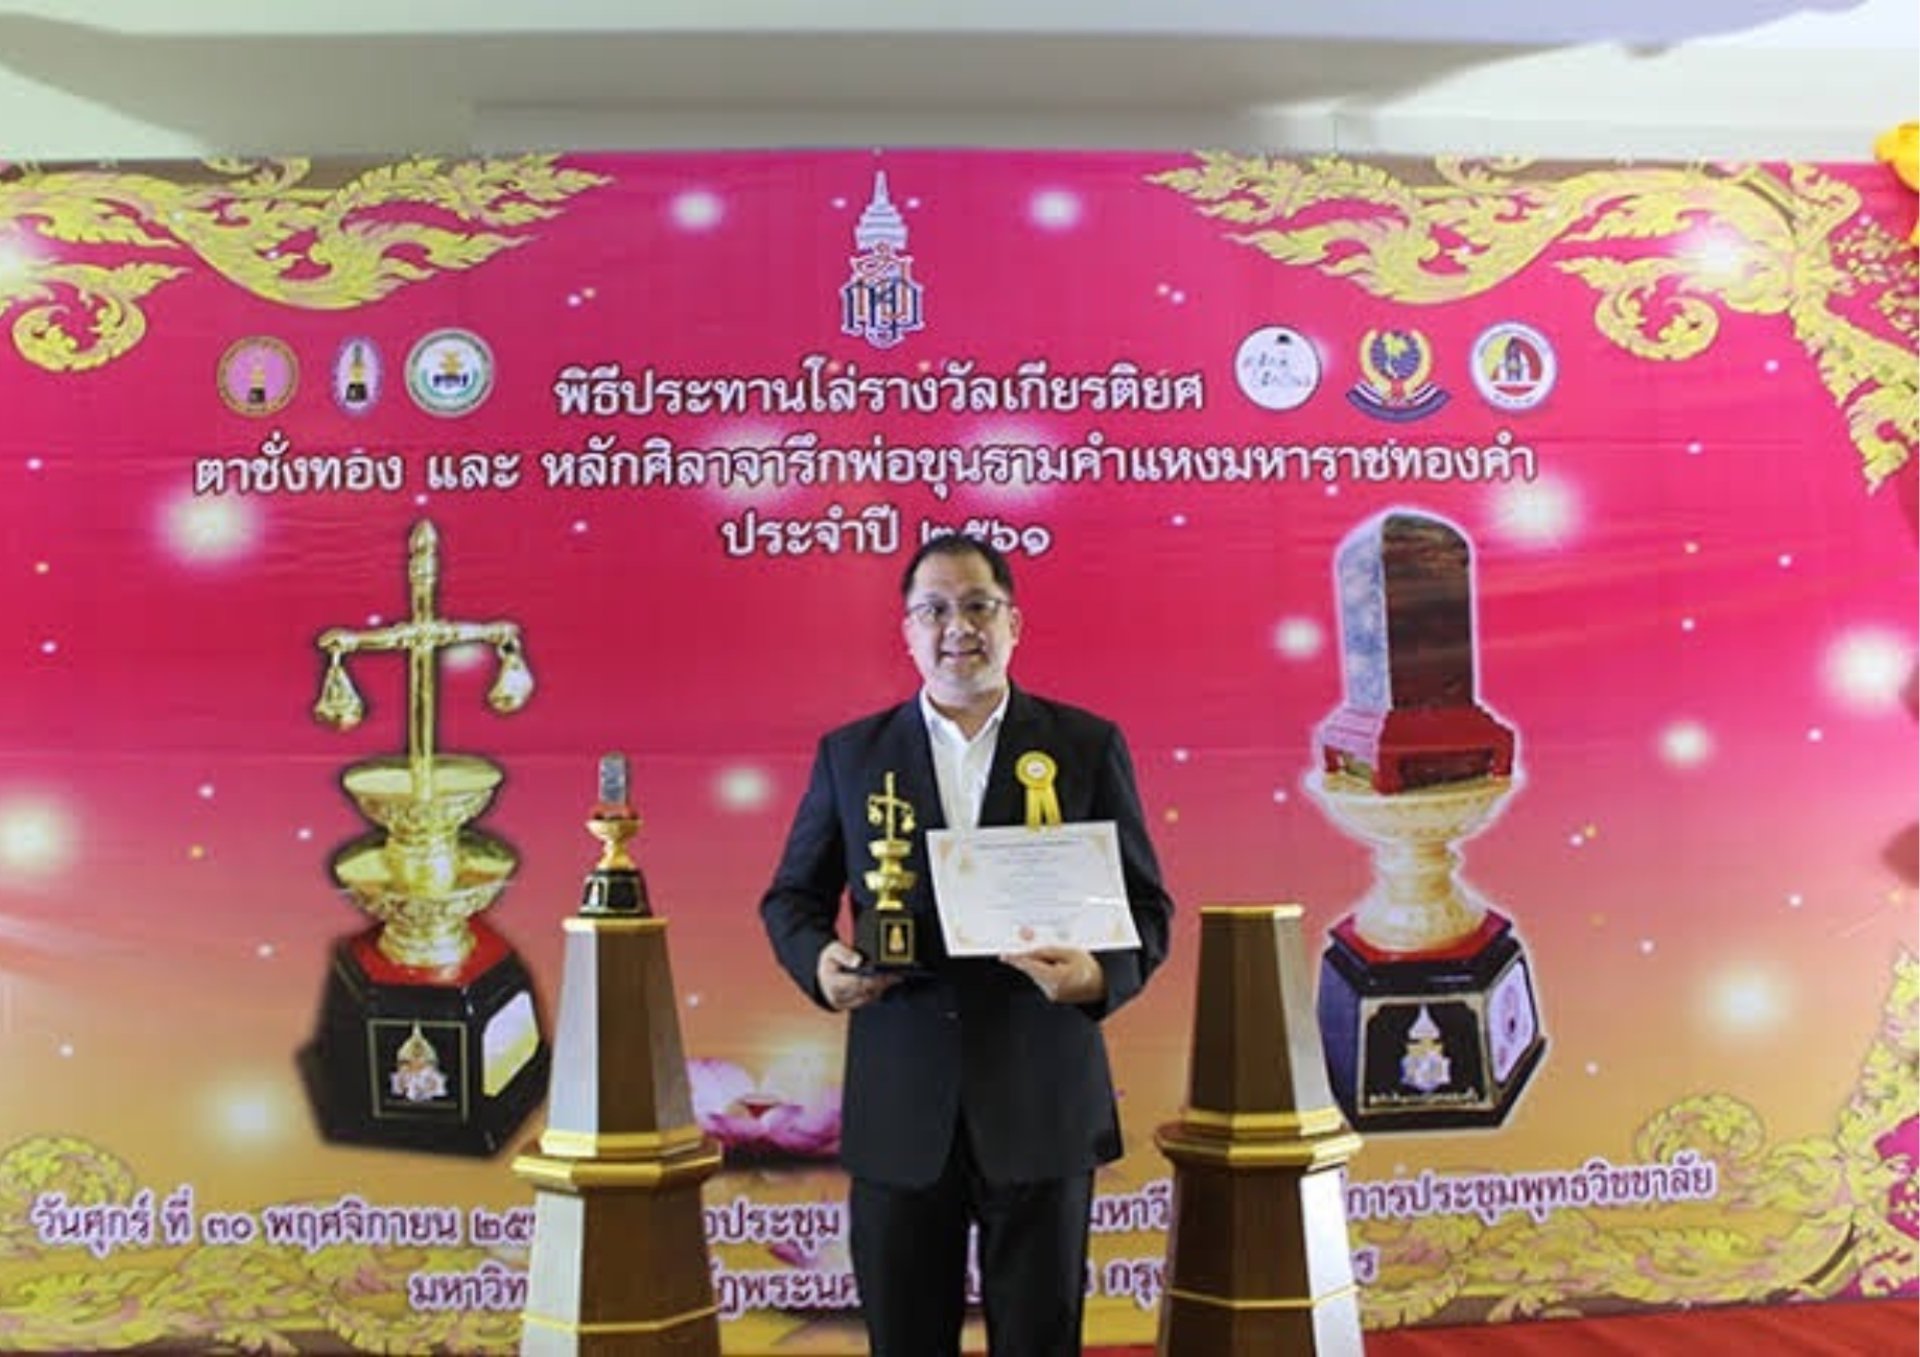 Mr. Teerawut Asavasopon, received the prestigious Golden Scales Award